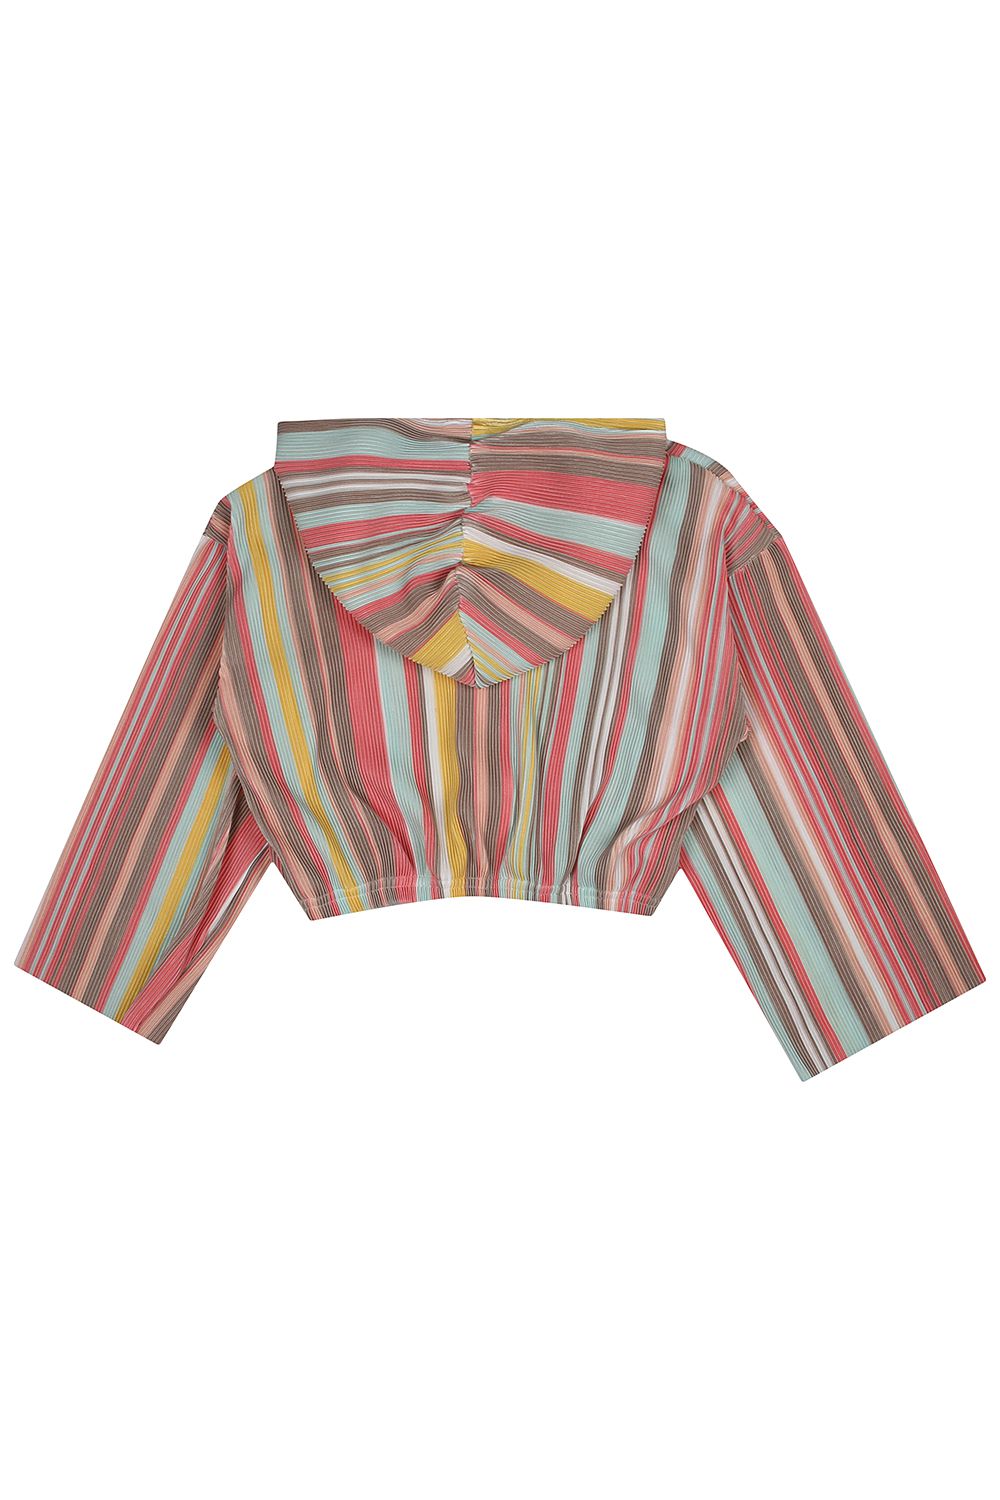 Куртка Y-clu', размер 128, цвет разноцветный Y13194 - фото 3